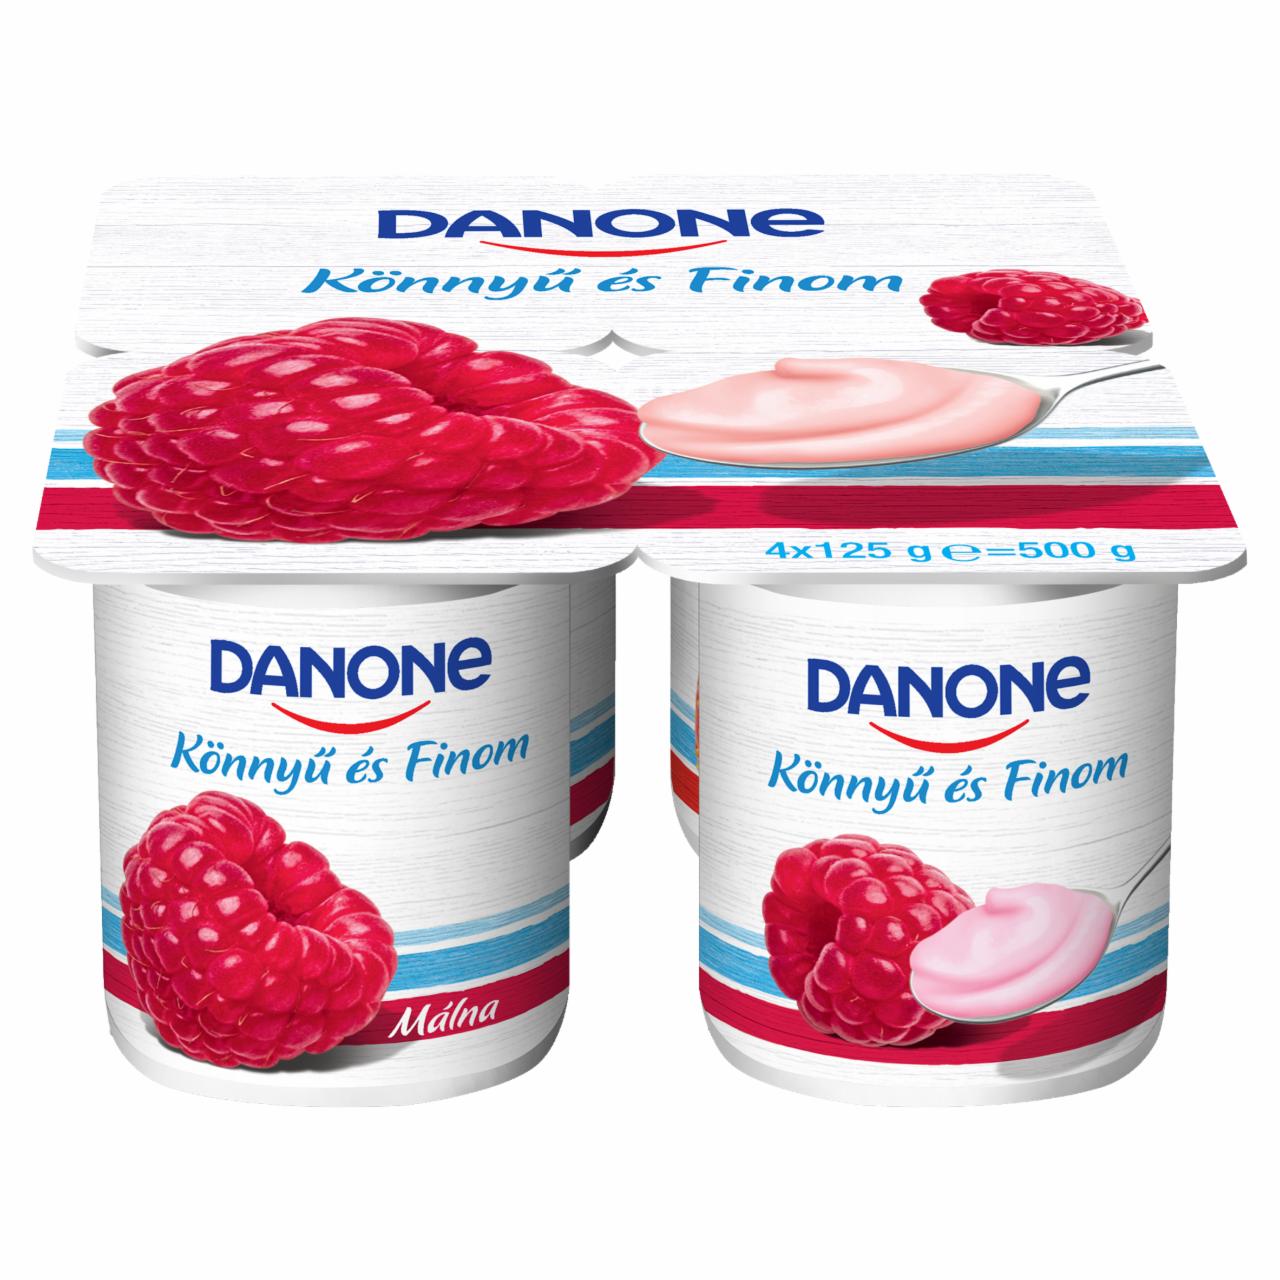 Képek - Danone málnaízű, élőflórás, zsírszegény joghurt 4 x 125 g